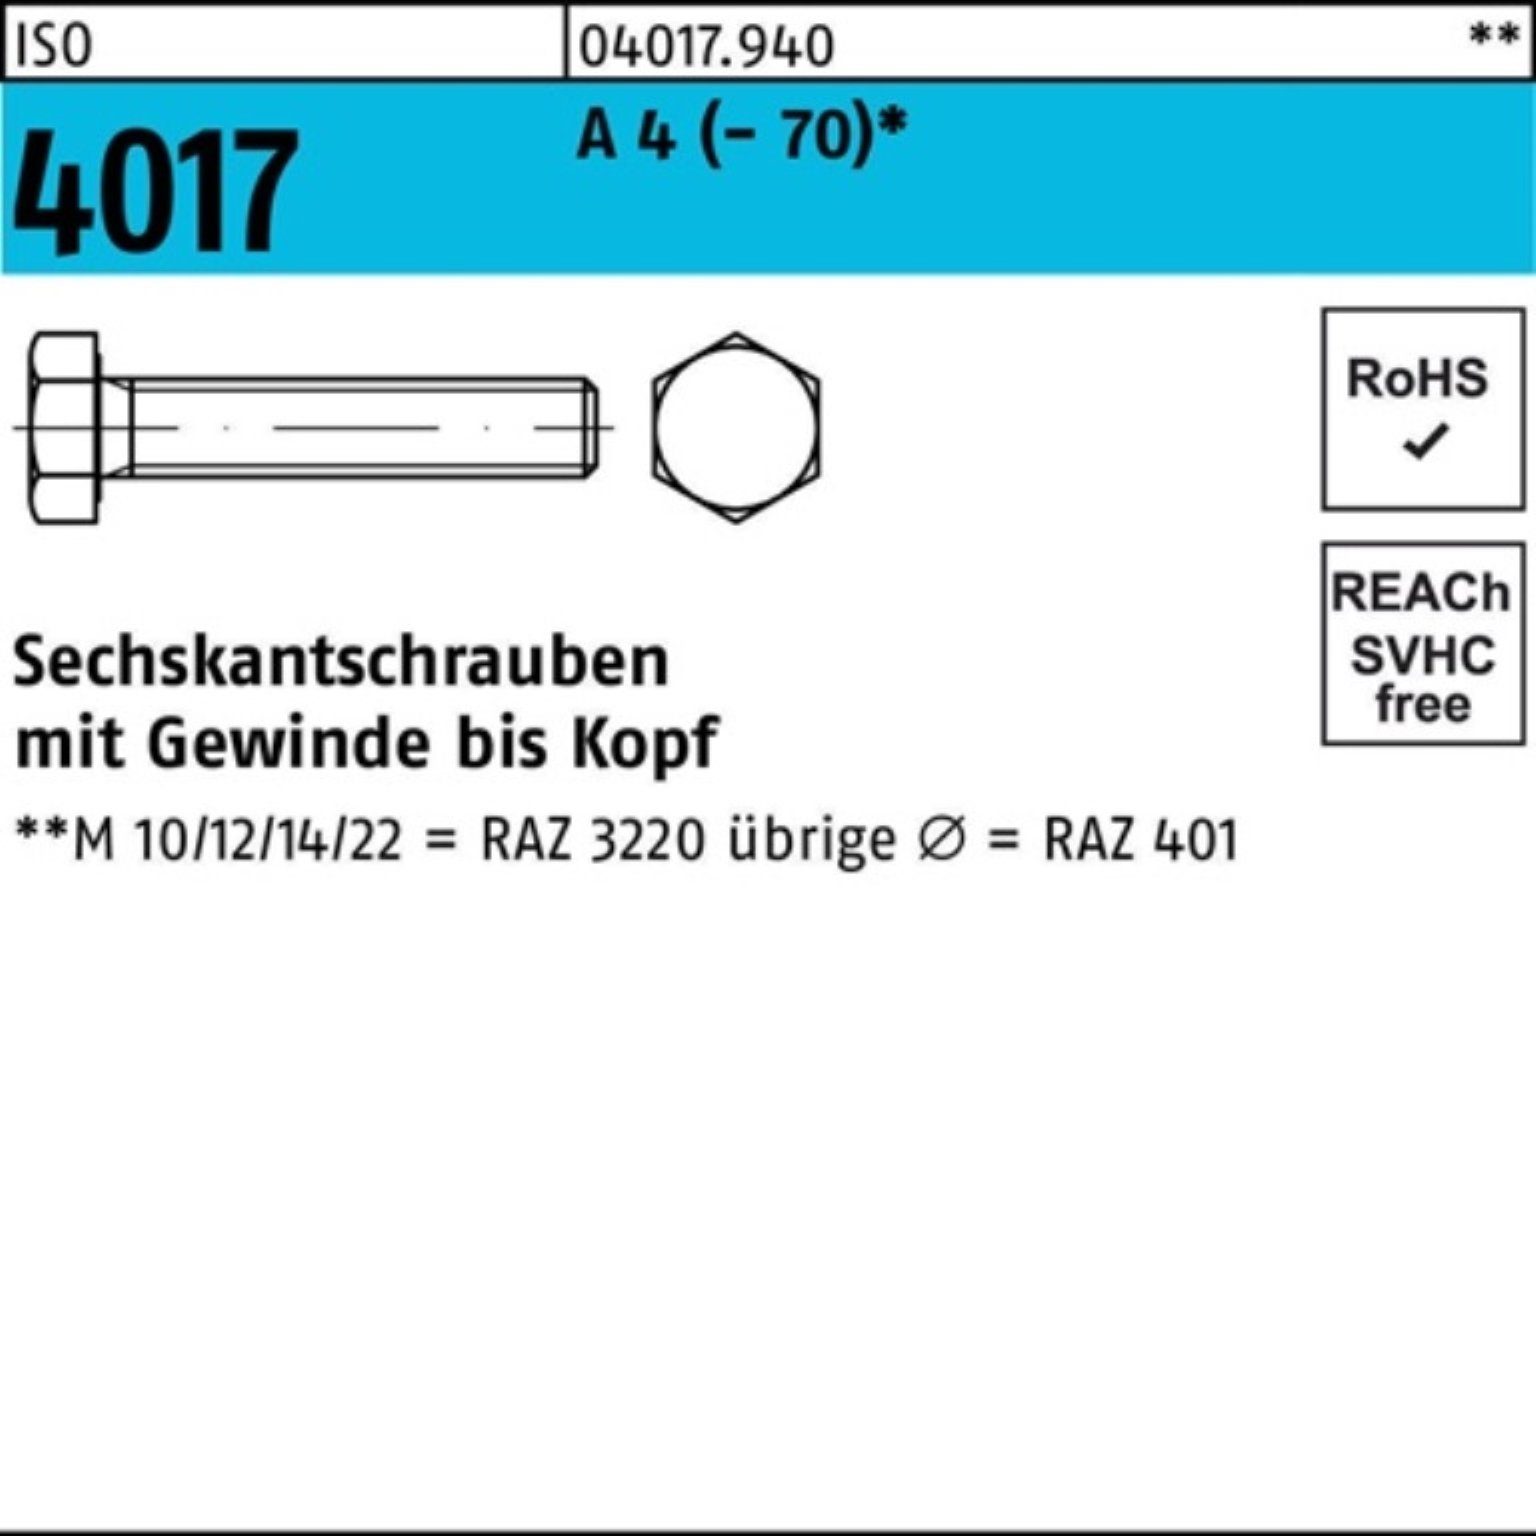 Bufab Sechskantschraube 100er Pack ISO Stück A VG I 1 4 (70) Sechskantschraube M24x 4017 40